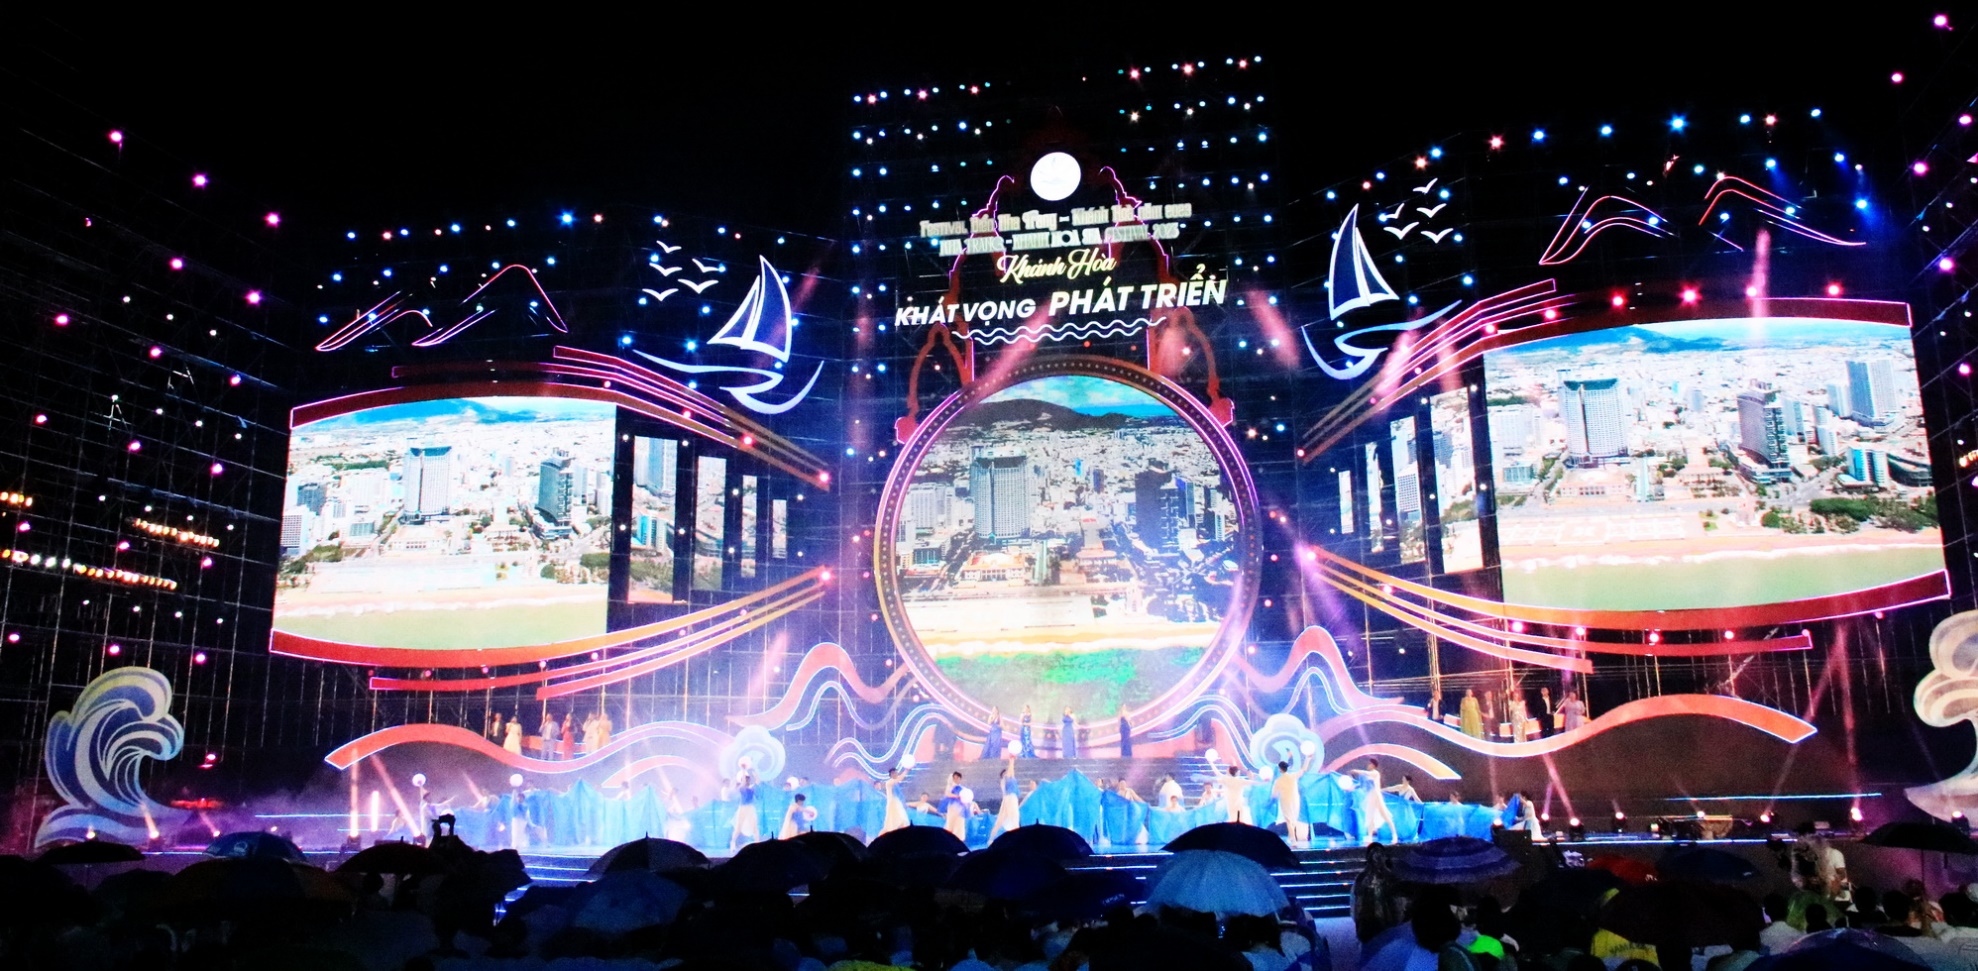 Festival Biển Nha Trang - Khánh Hòa đã chạm đến trái tim của người dân và du khách - 1